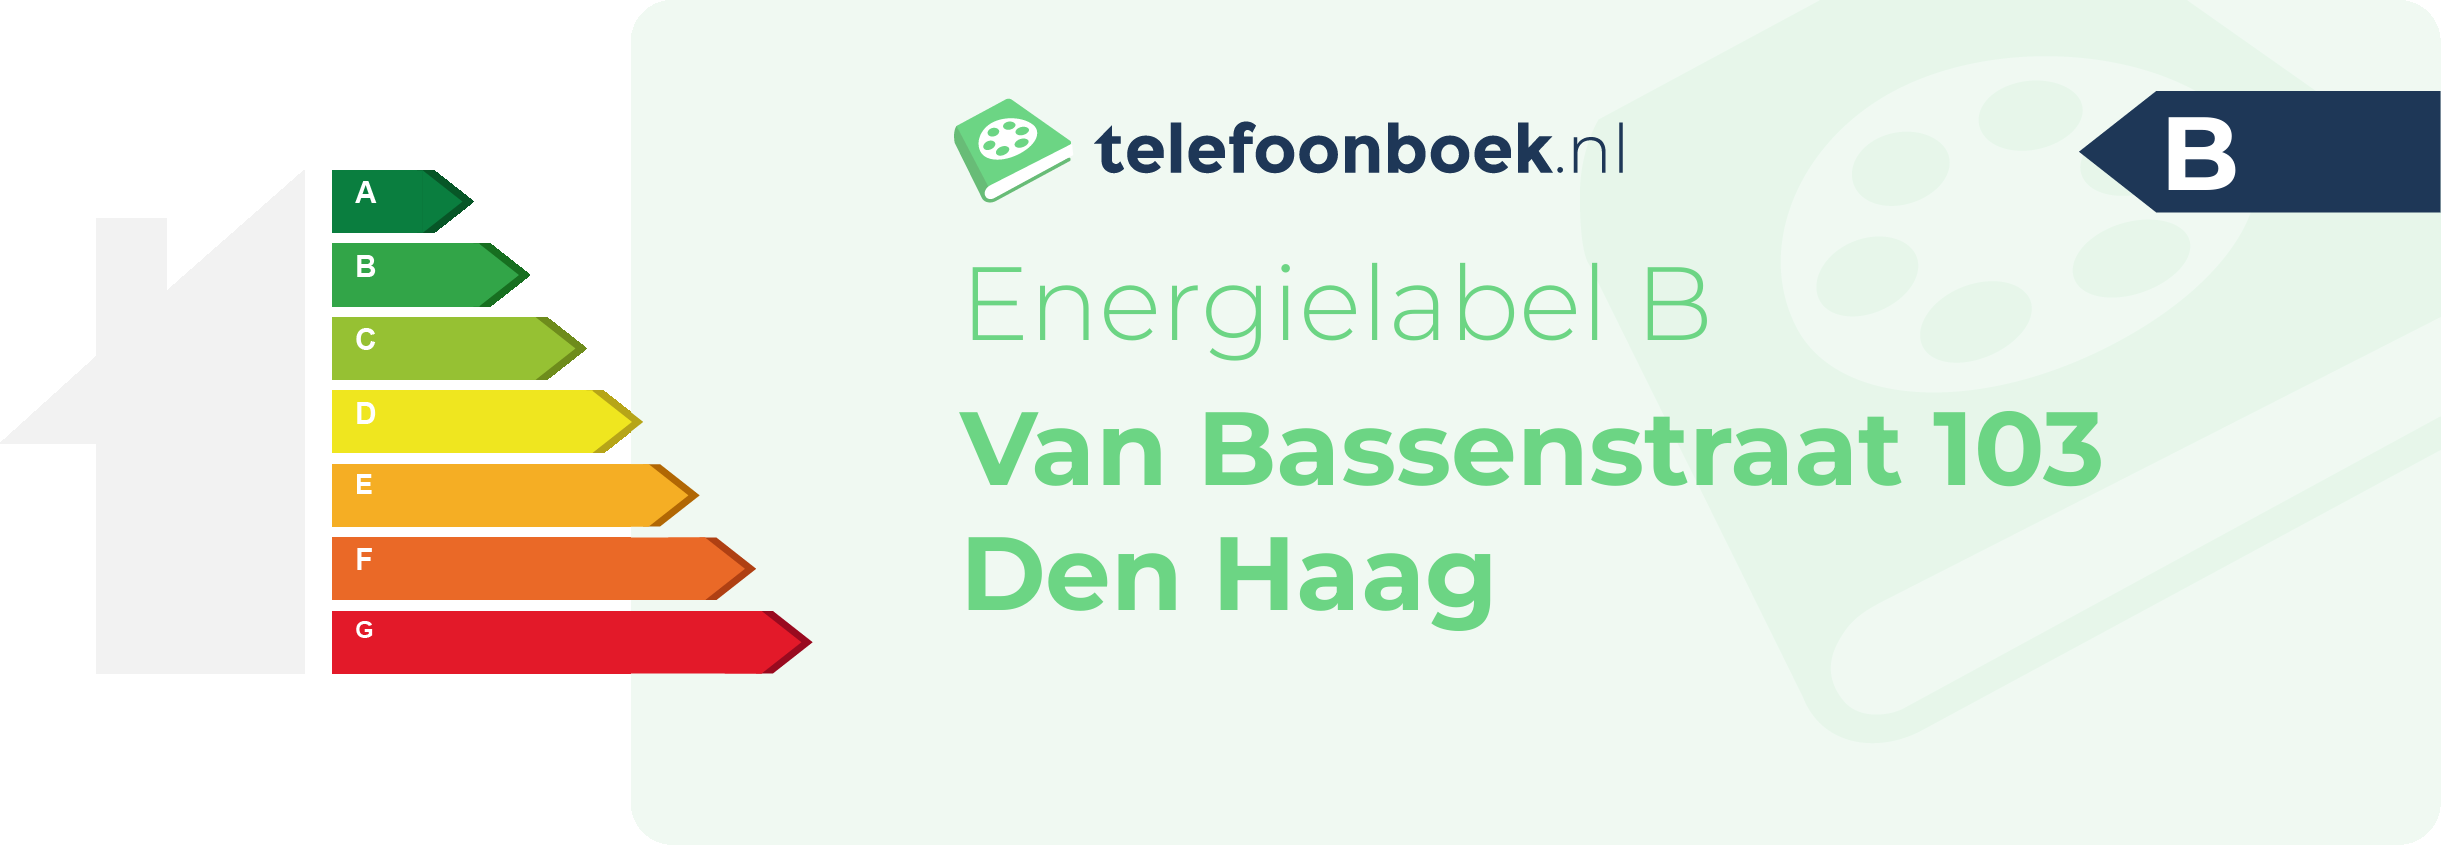 Energielabel Van Bassenstraat 103 Den Haag